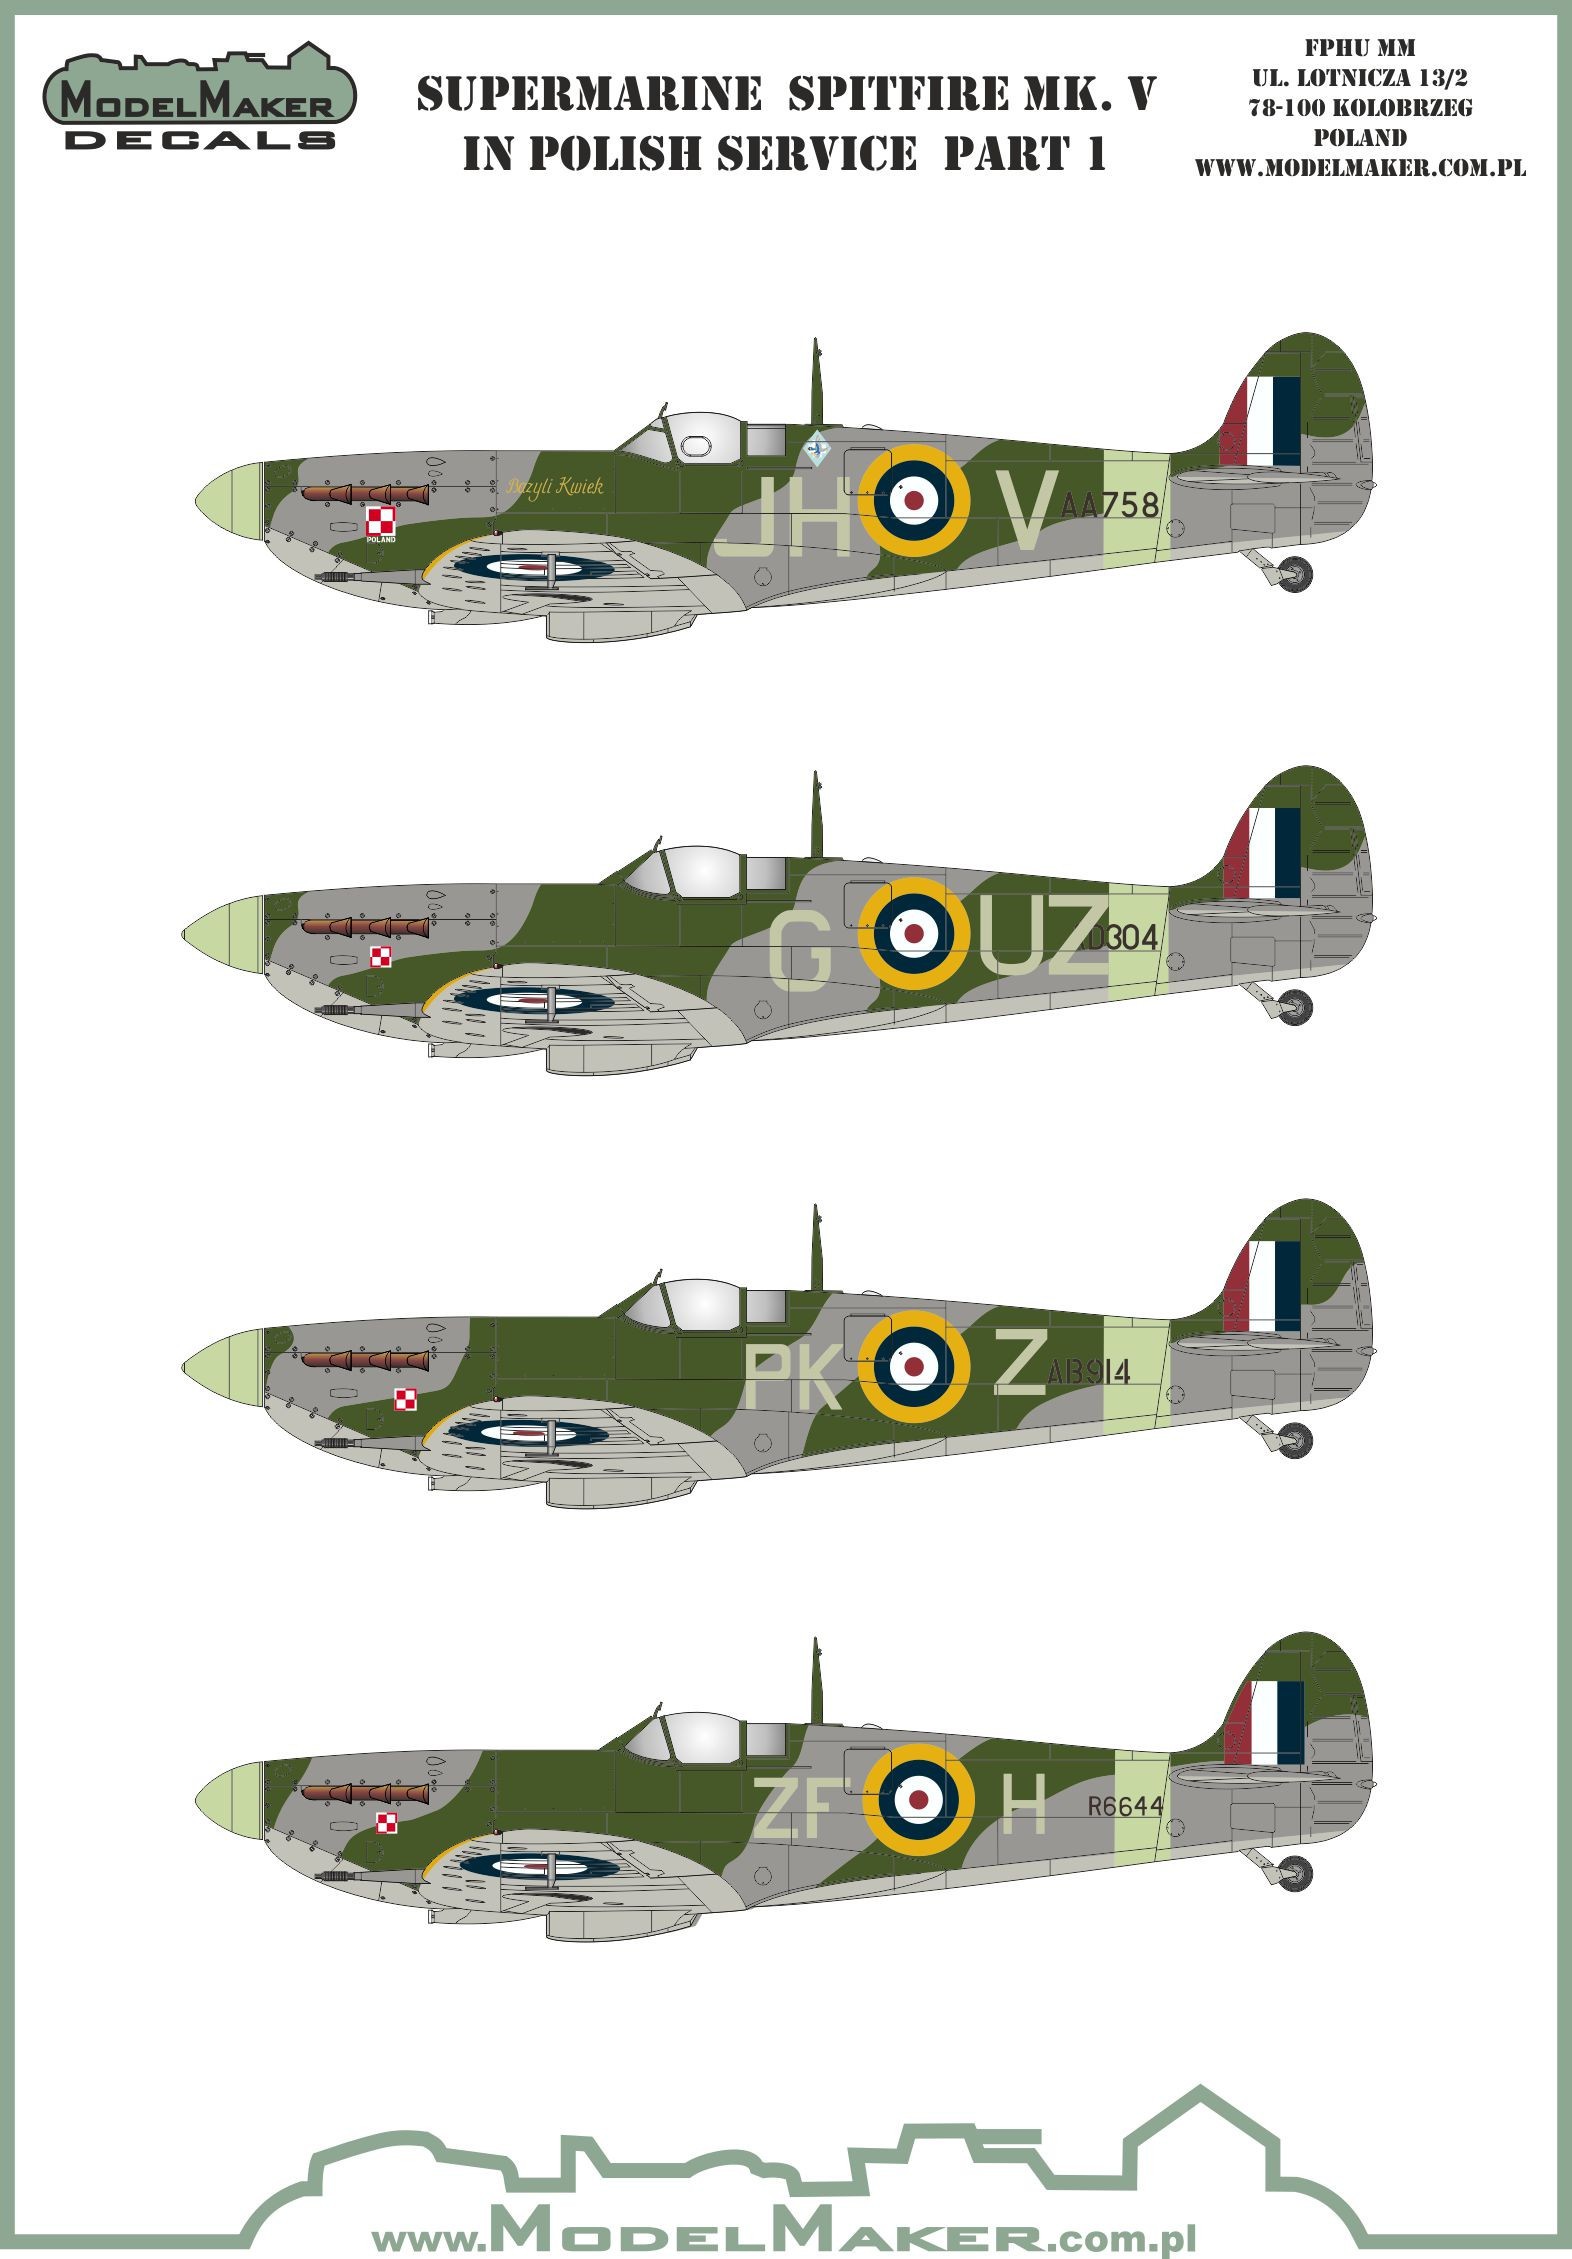  Model Maker Decals Décal Supermarine Spitfire Mk.V dans la première p